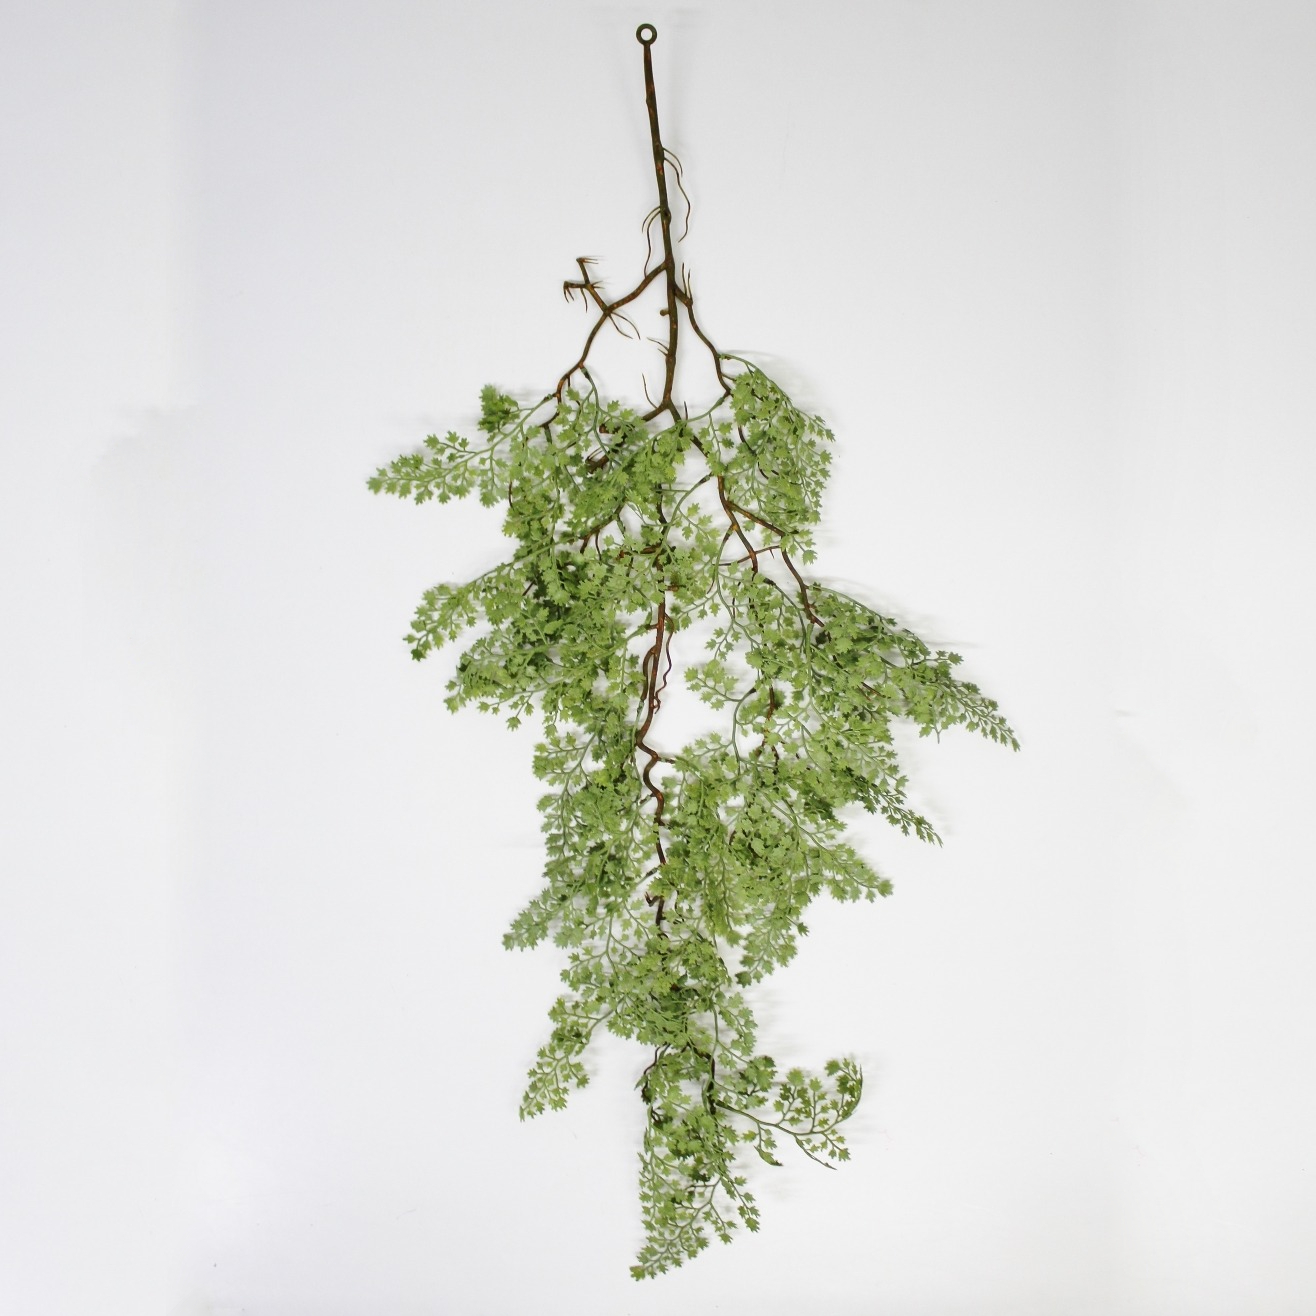 сциндапcус конэко о ампельный искусственный с листьями из латекса 90 см Адиантум Конэко-О ампельный 5551095, 90 см